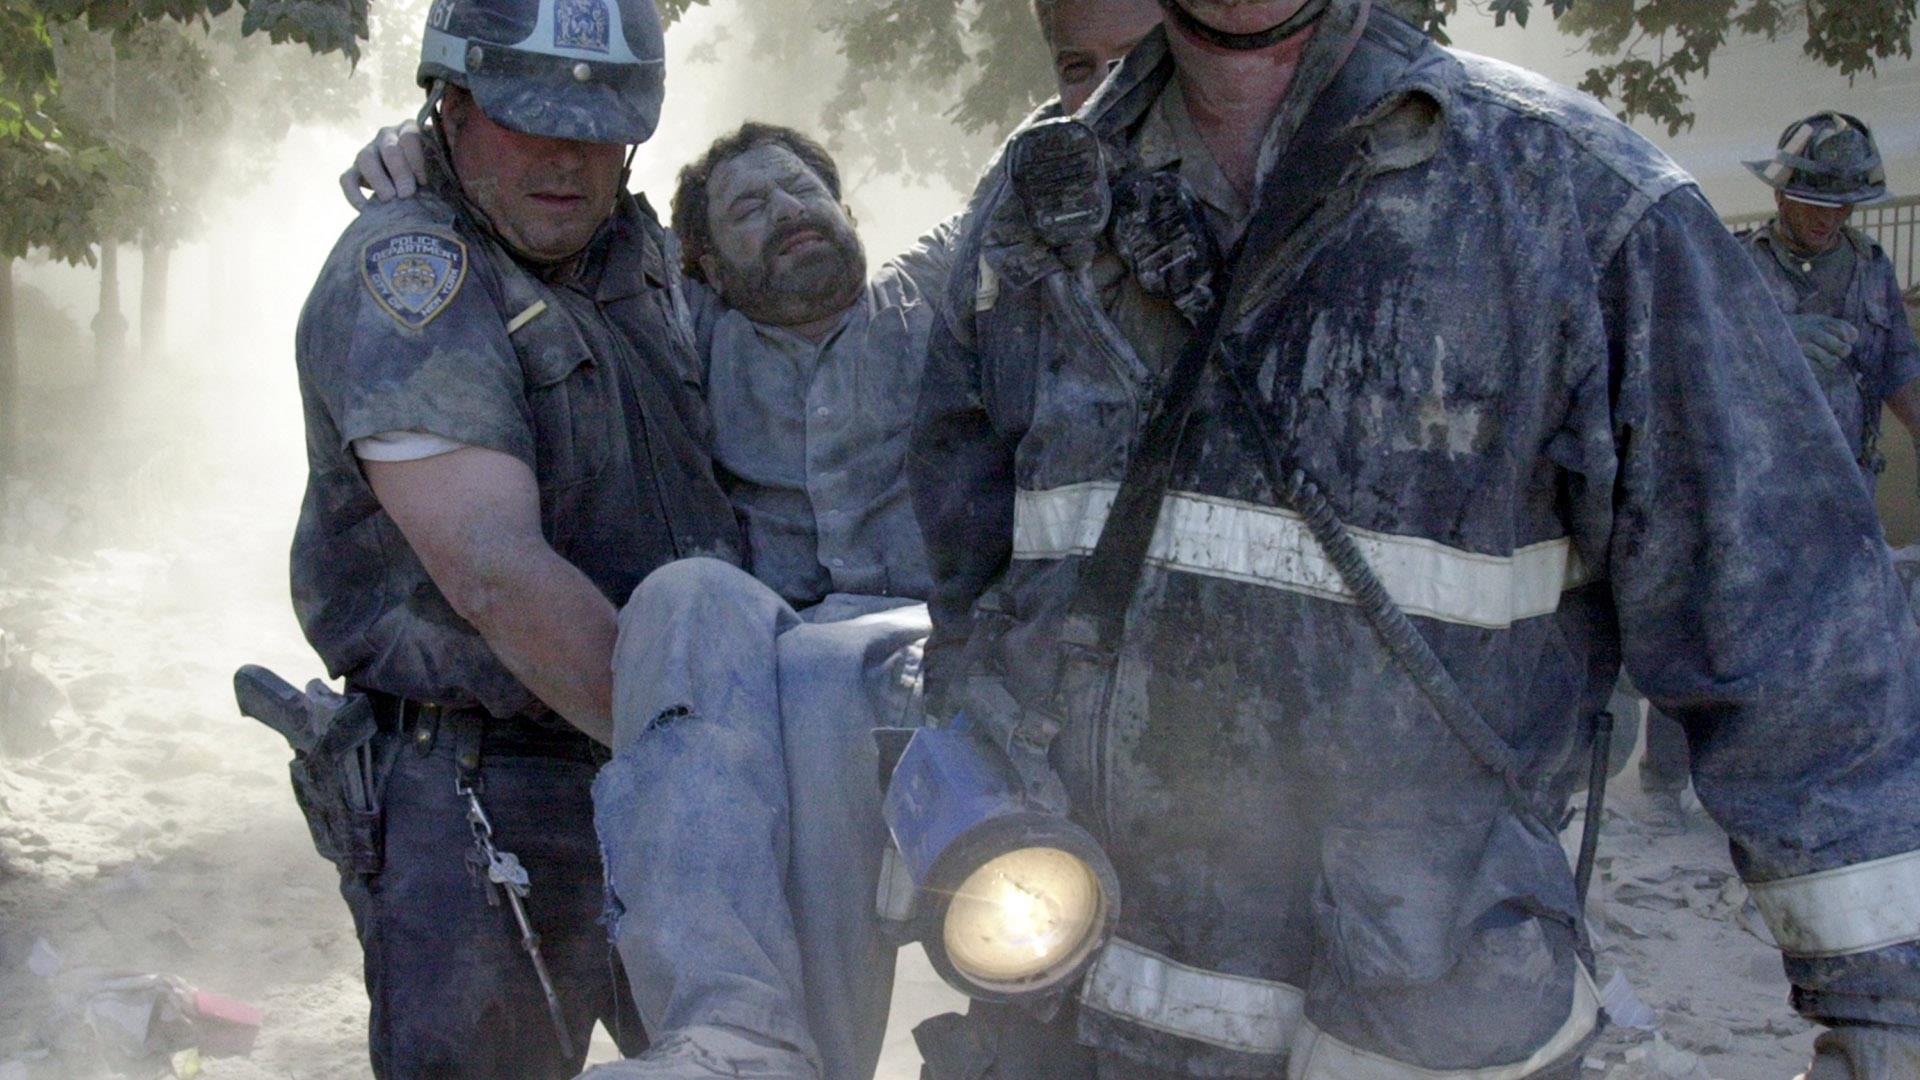 Сколько погибло людей в теракте 2001. 9.11.2001 Теракт сержант Маклафлин. Теракт в США 2001 башни Близнецы. Башни Близнецы 11 сентября жертвы.